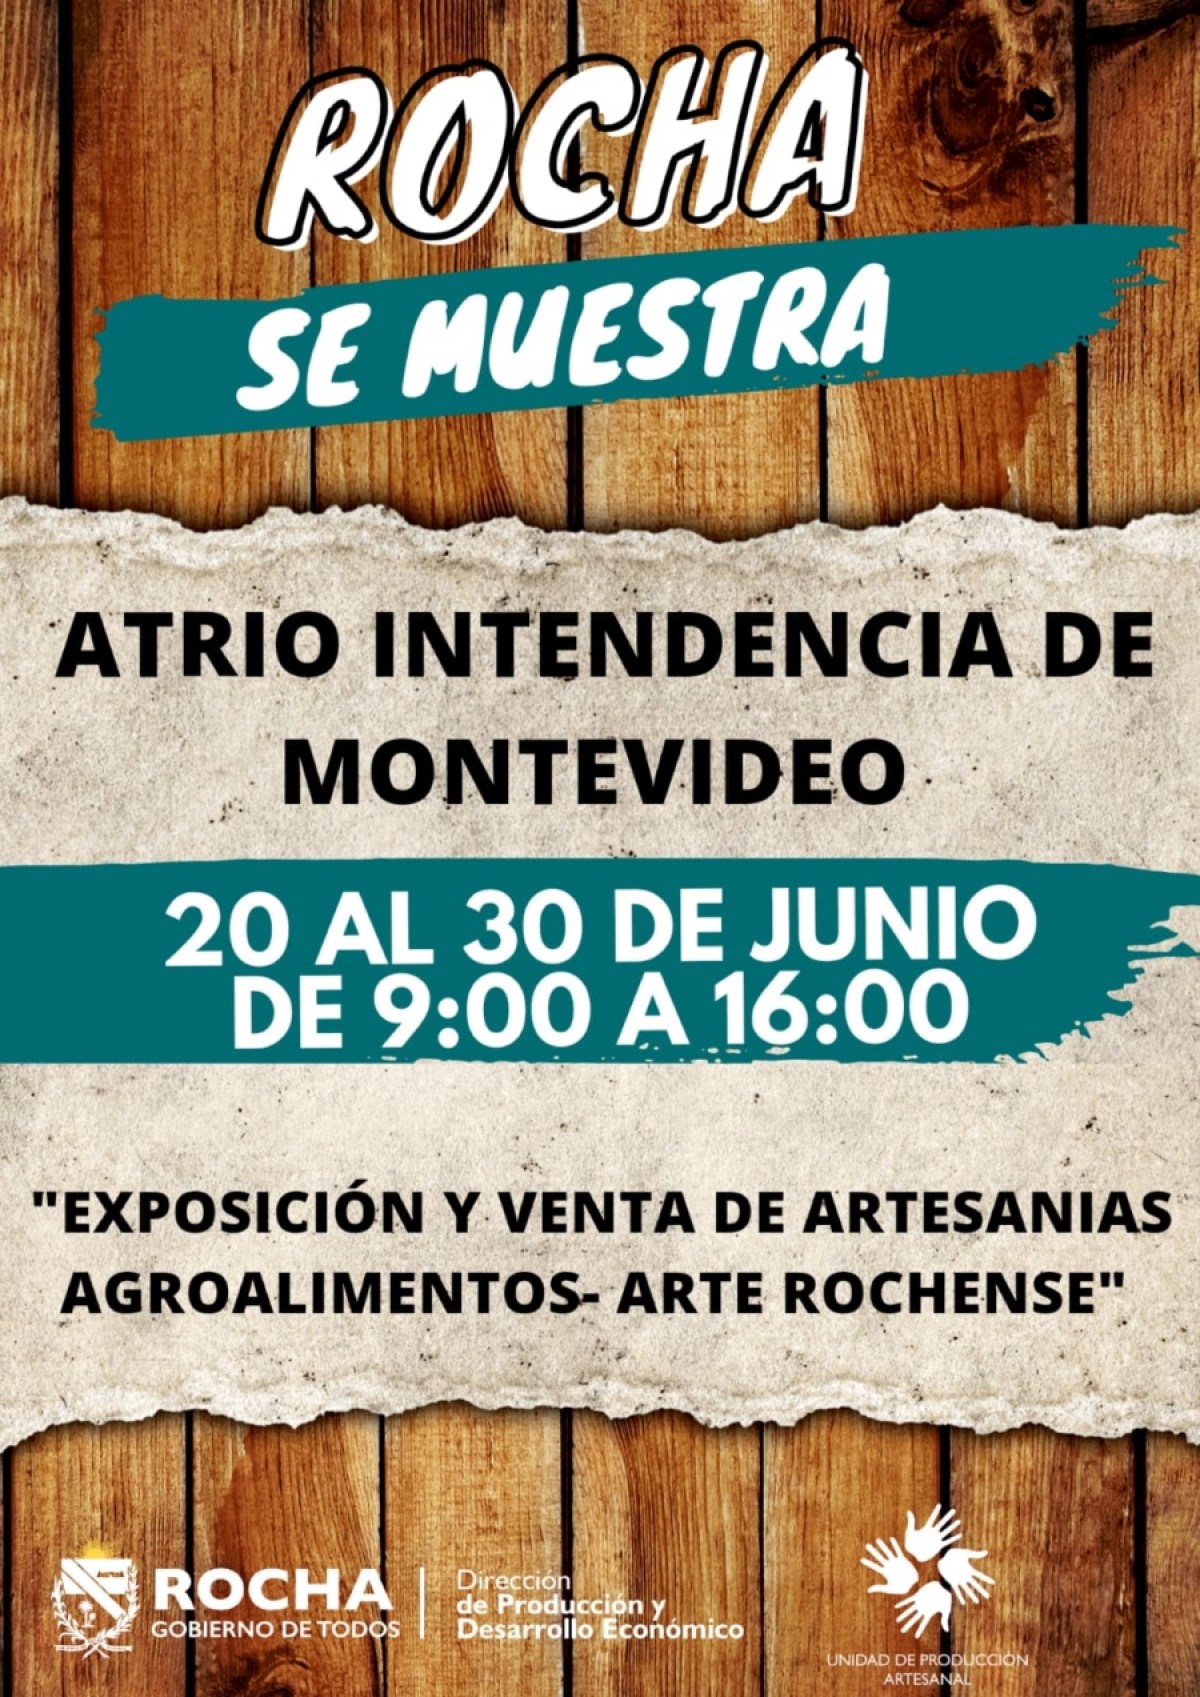 Rocha se muestra en Montevideo hasta el 30 de junio